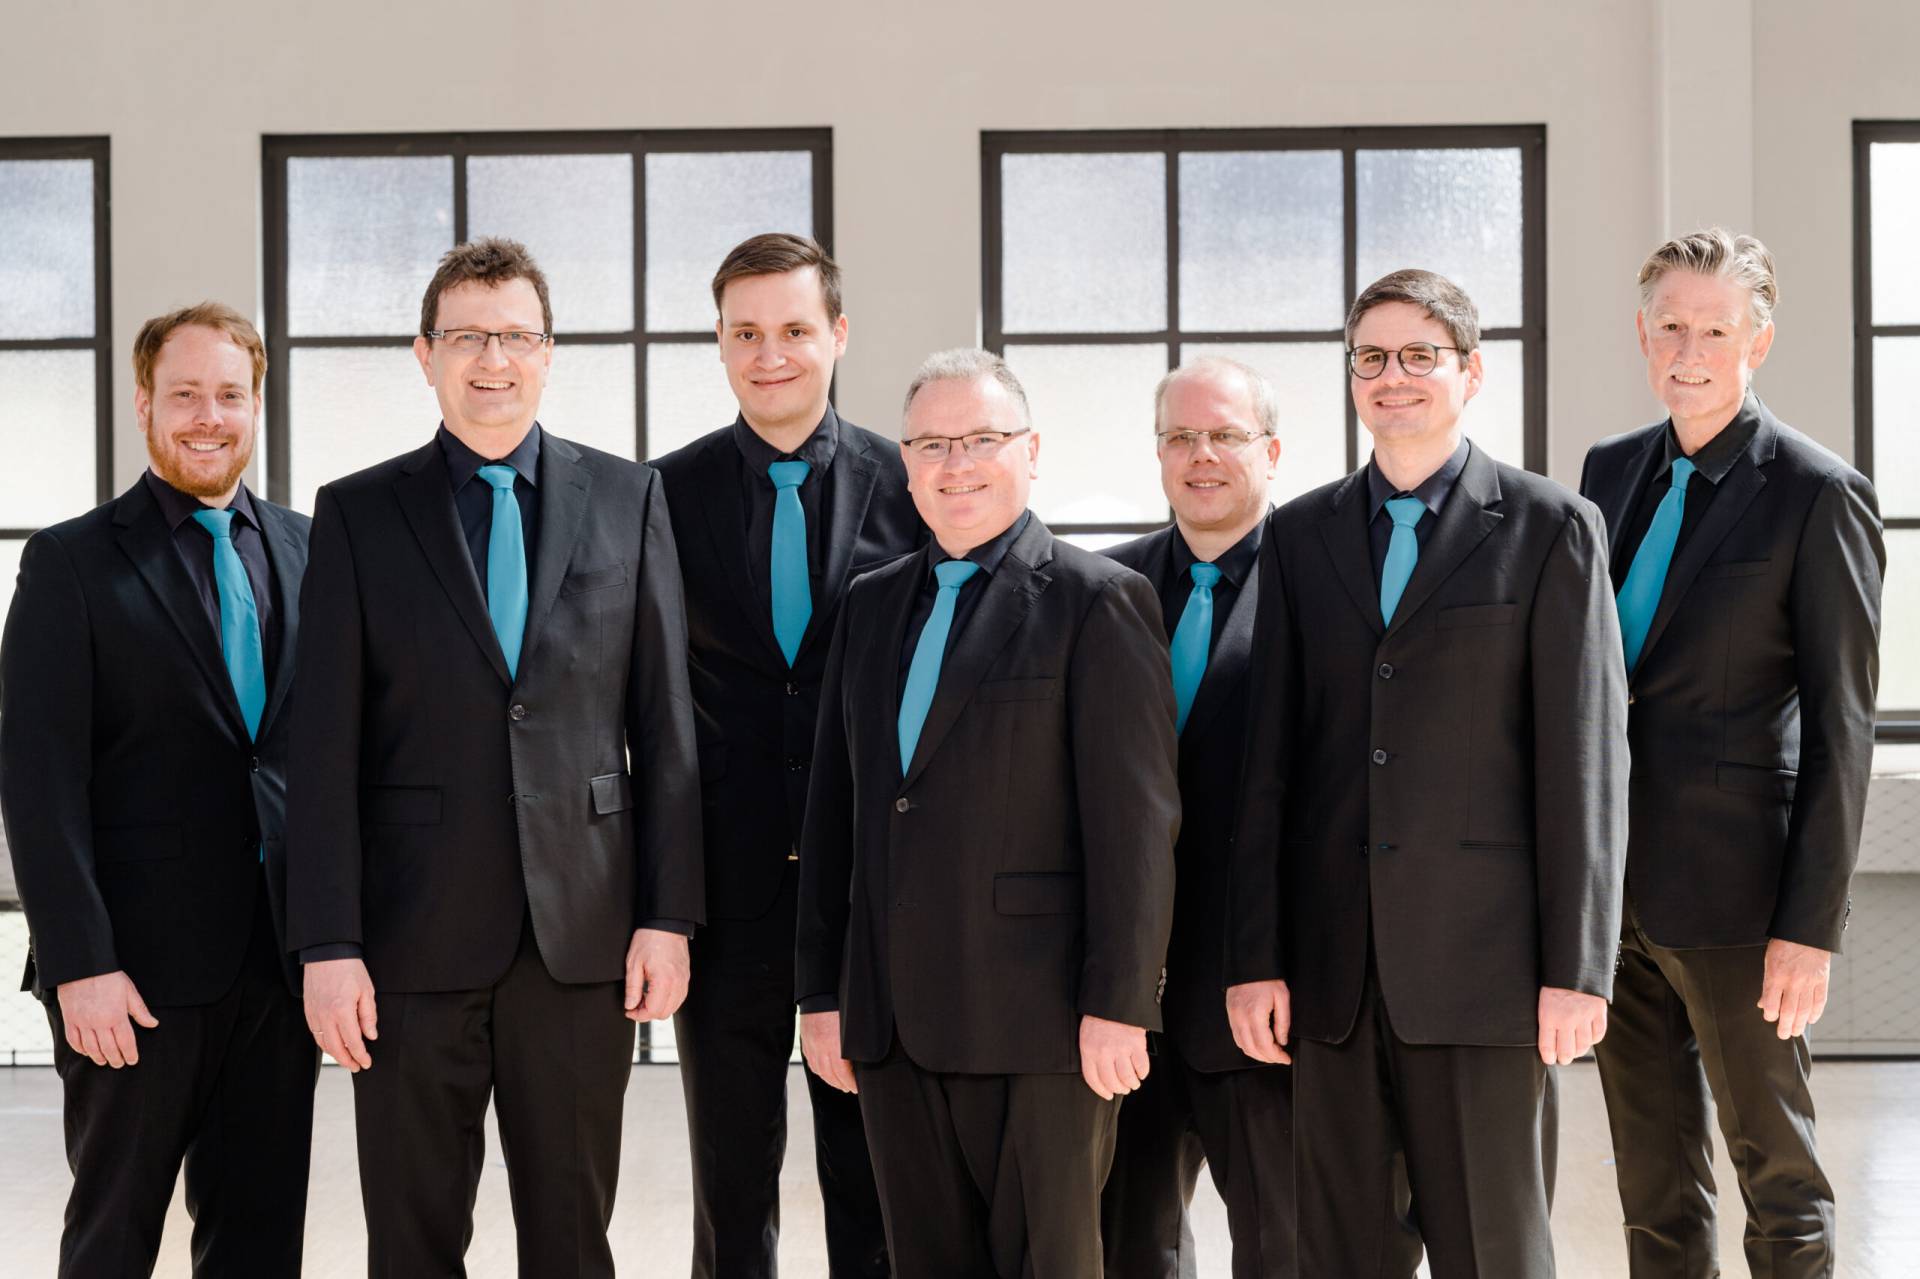 Sieben lächelnde Männer in schwarzen Anzügen und blauen Krawatten vor einer hellen Fensterfront